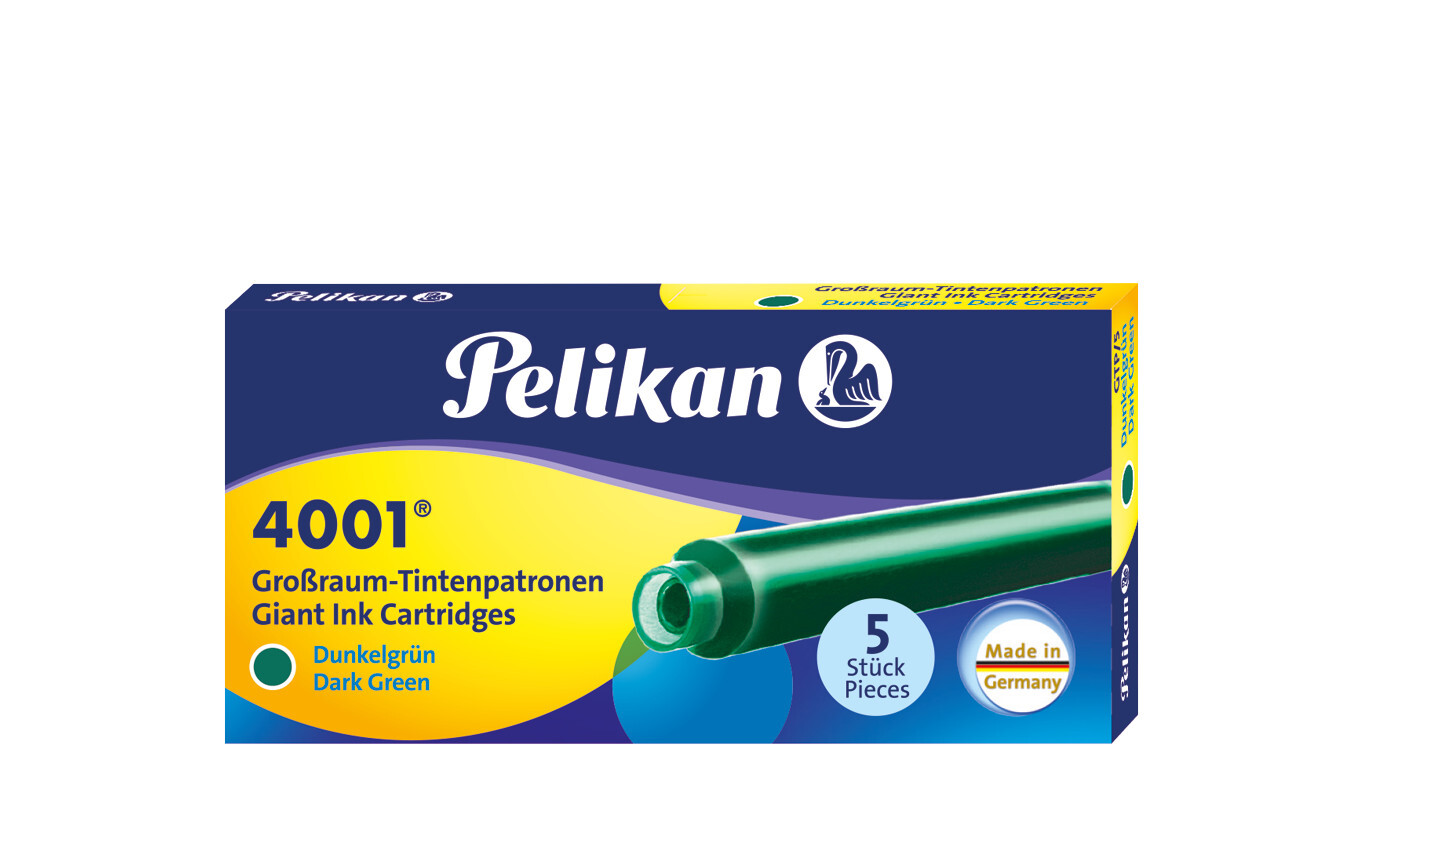 Pelikan Tintenpatronen 4001® 5er Set Großraum-Patronen Dunkelgrün